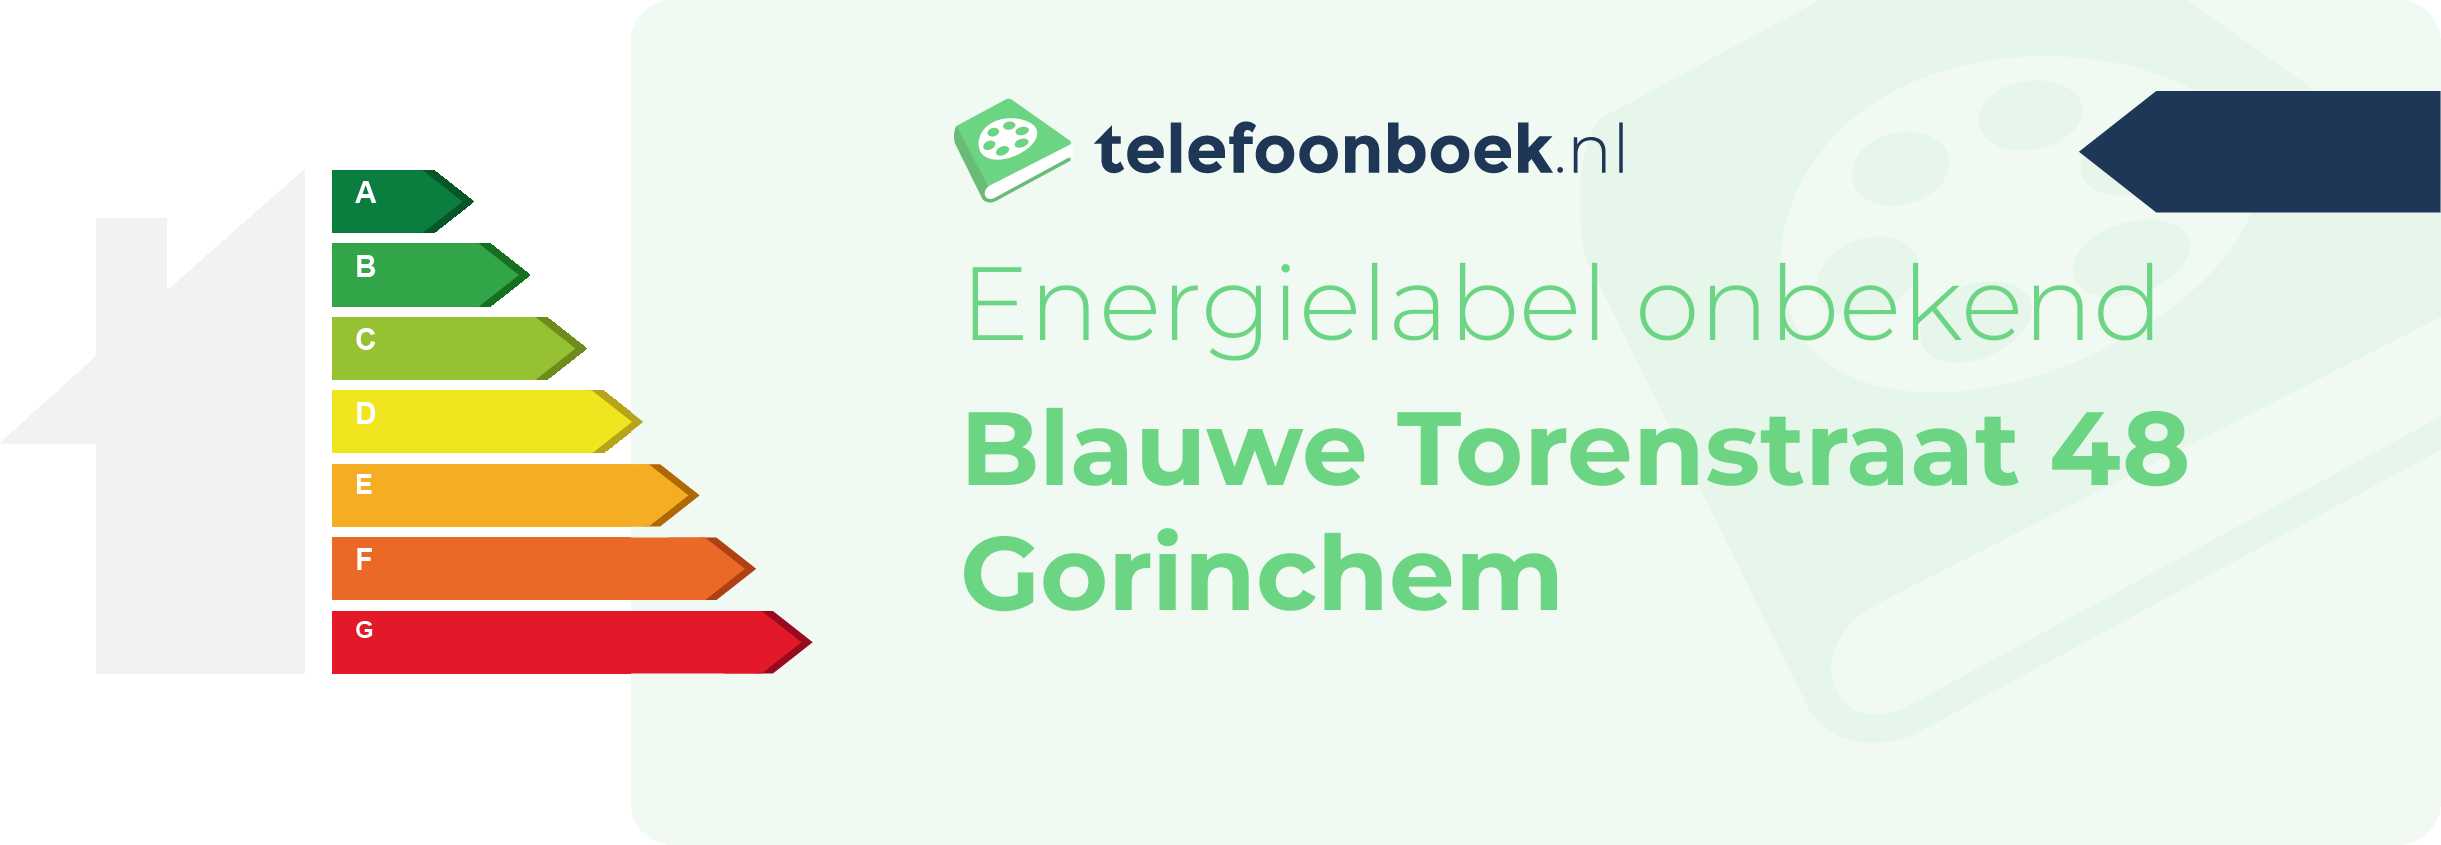 Energielabel Blauwe Torenstraat 48 Gorinchem